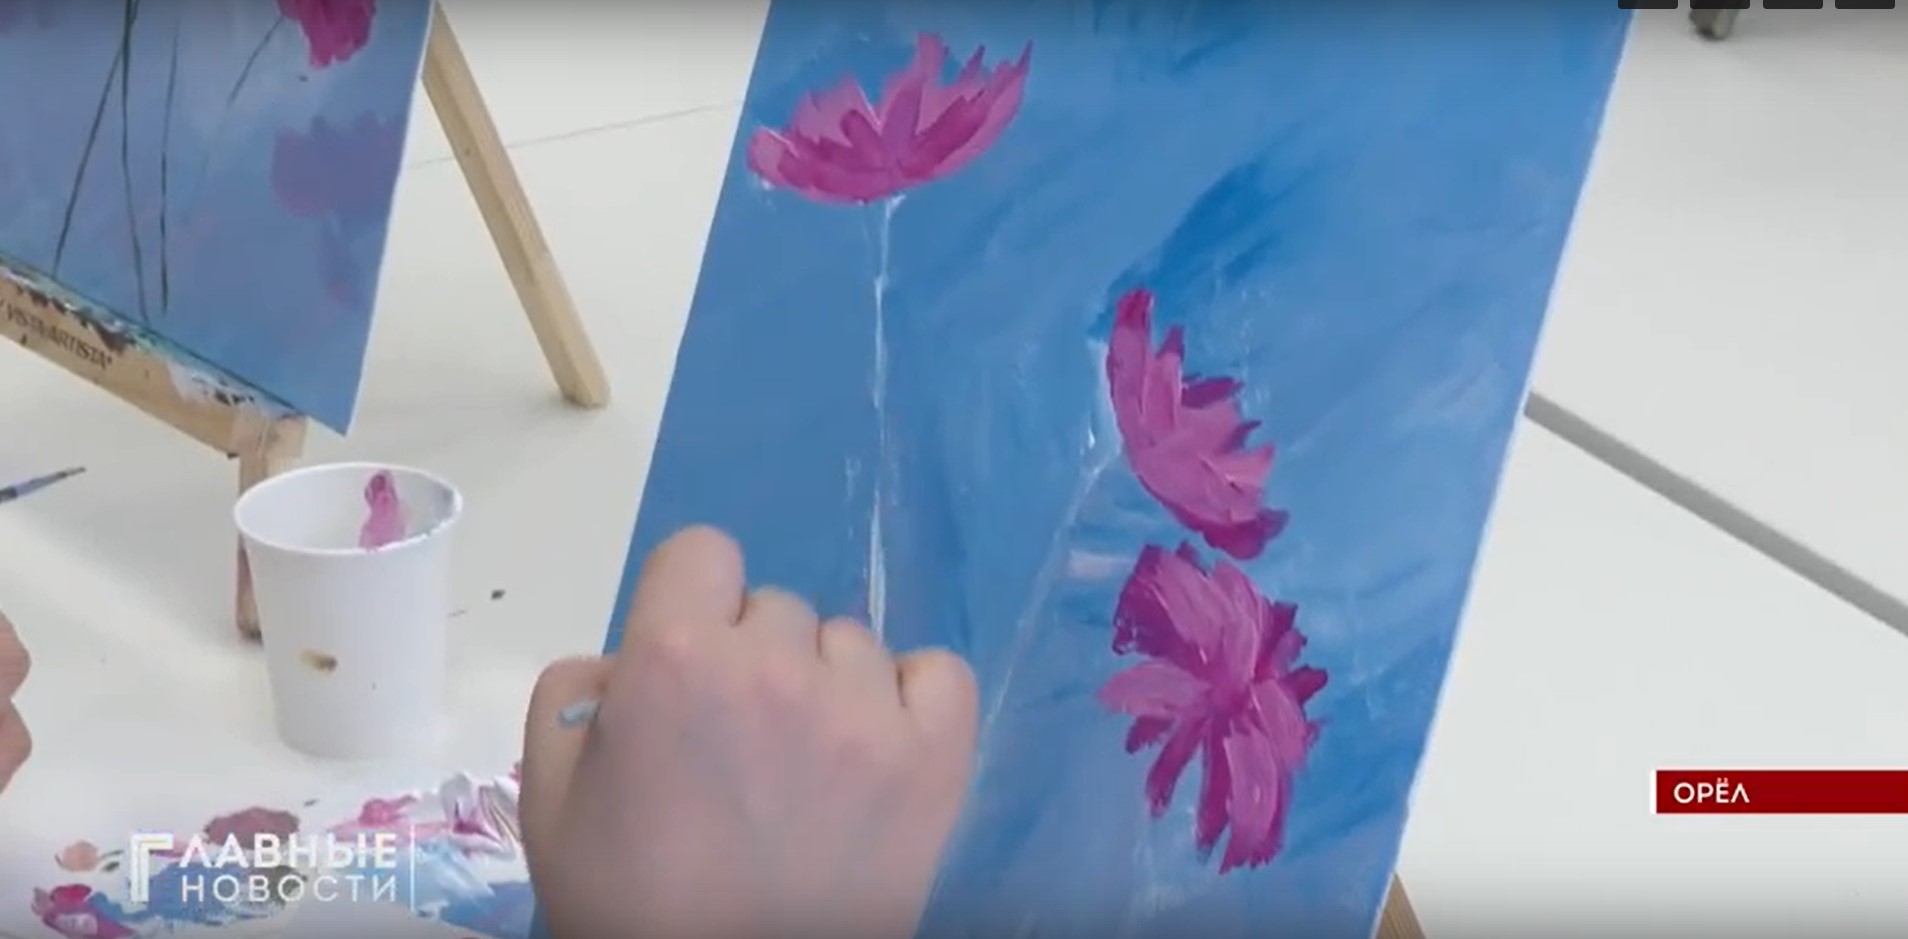 Ожидание чуда в красках: для будущих мам в Семейном МФЦ Орла провели арт-терапию